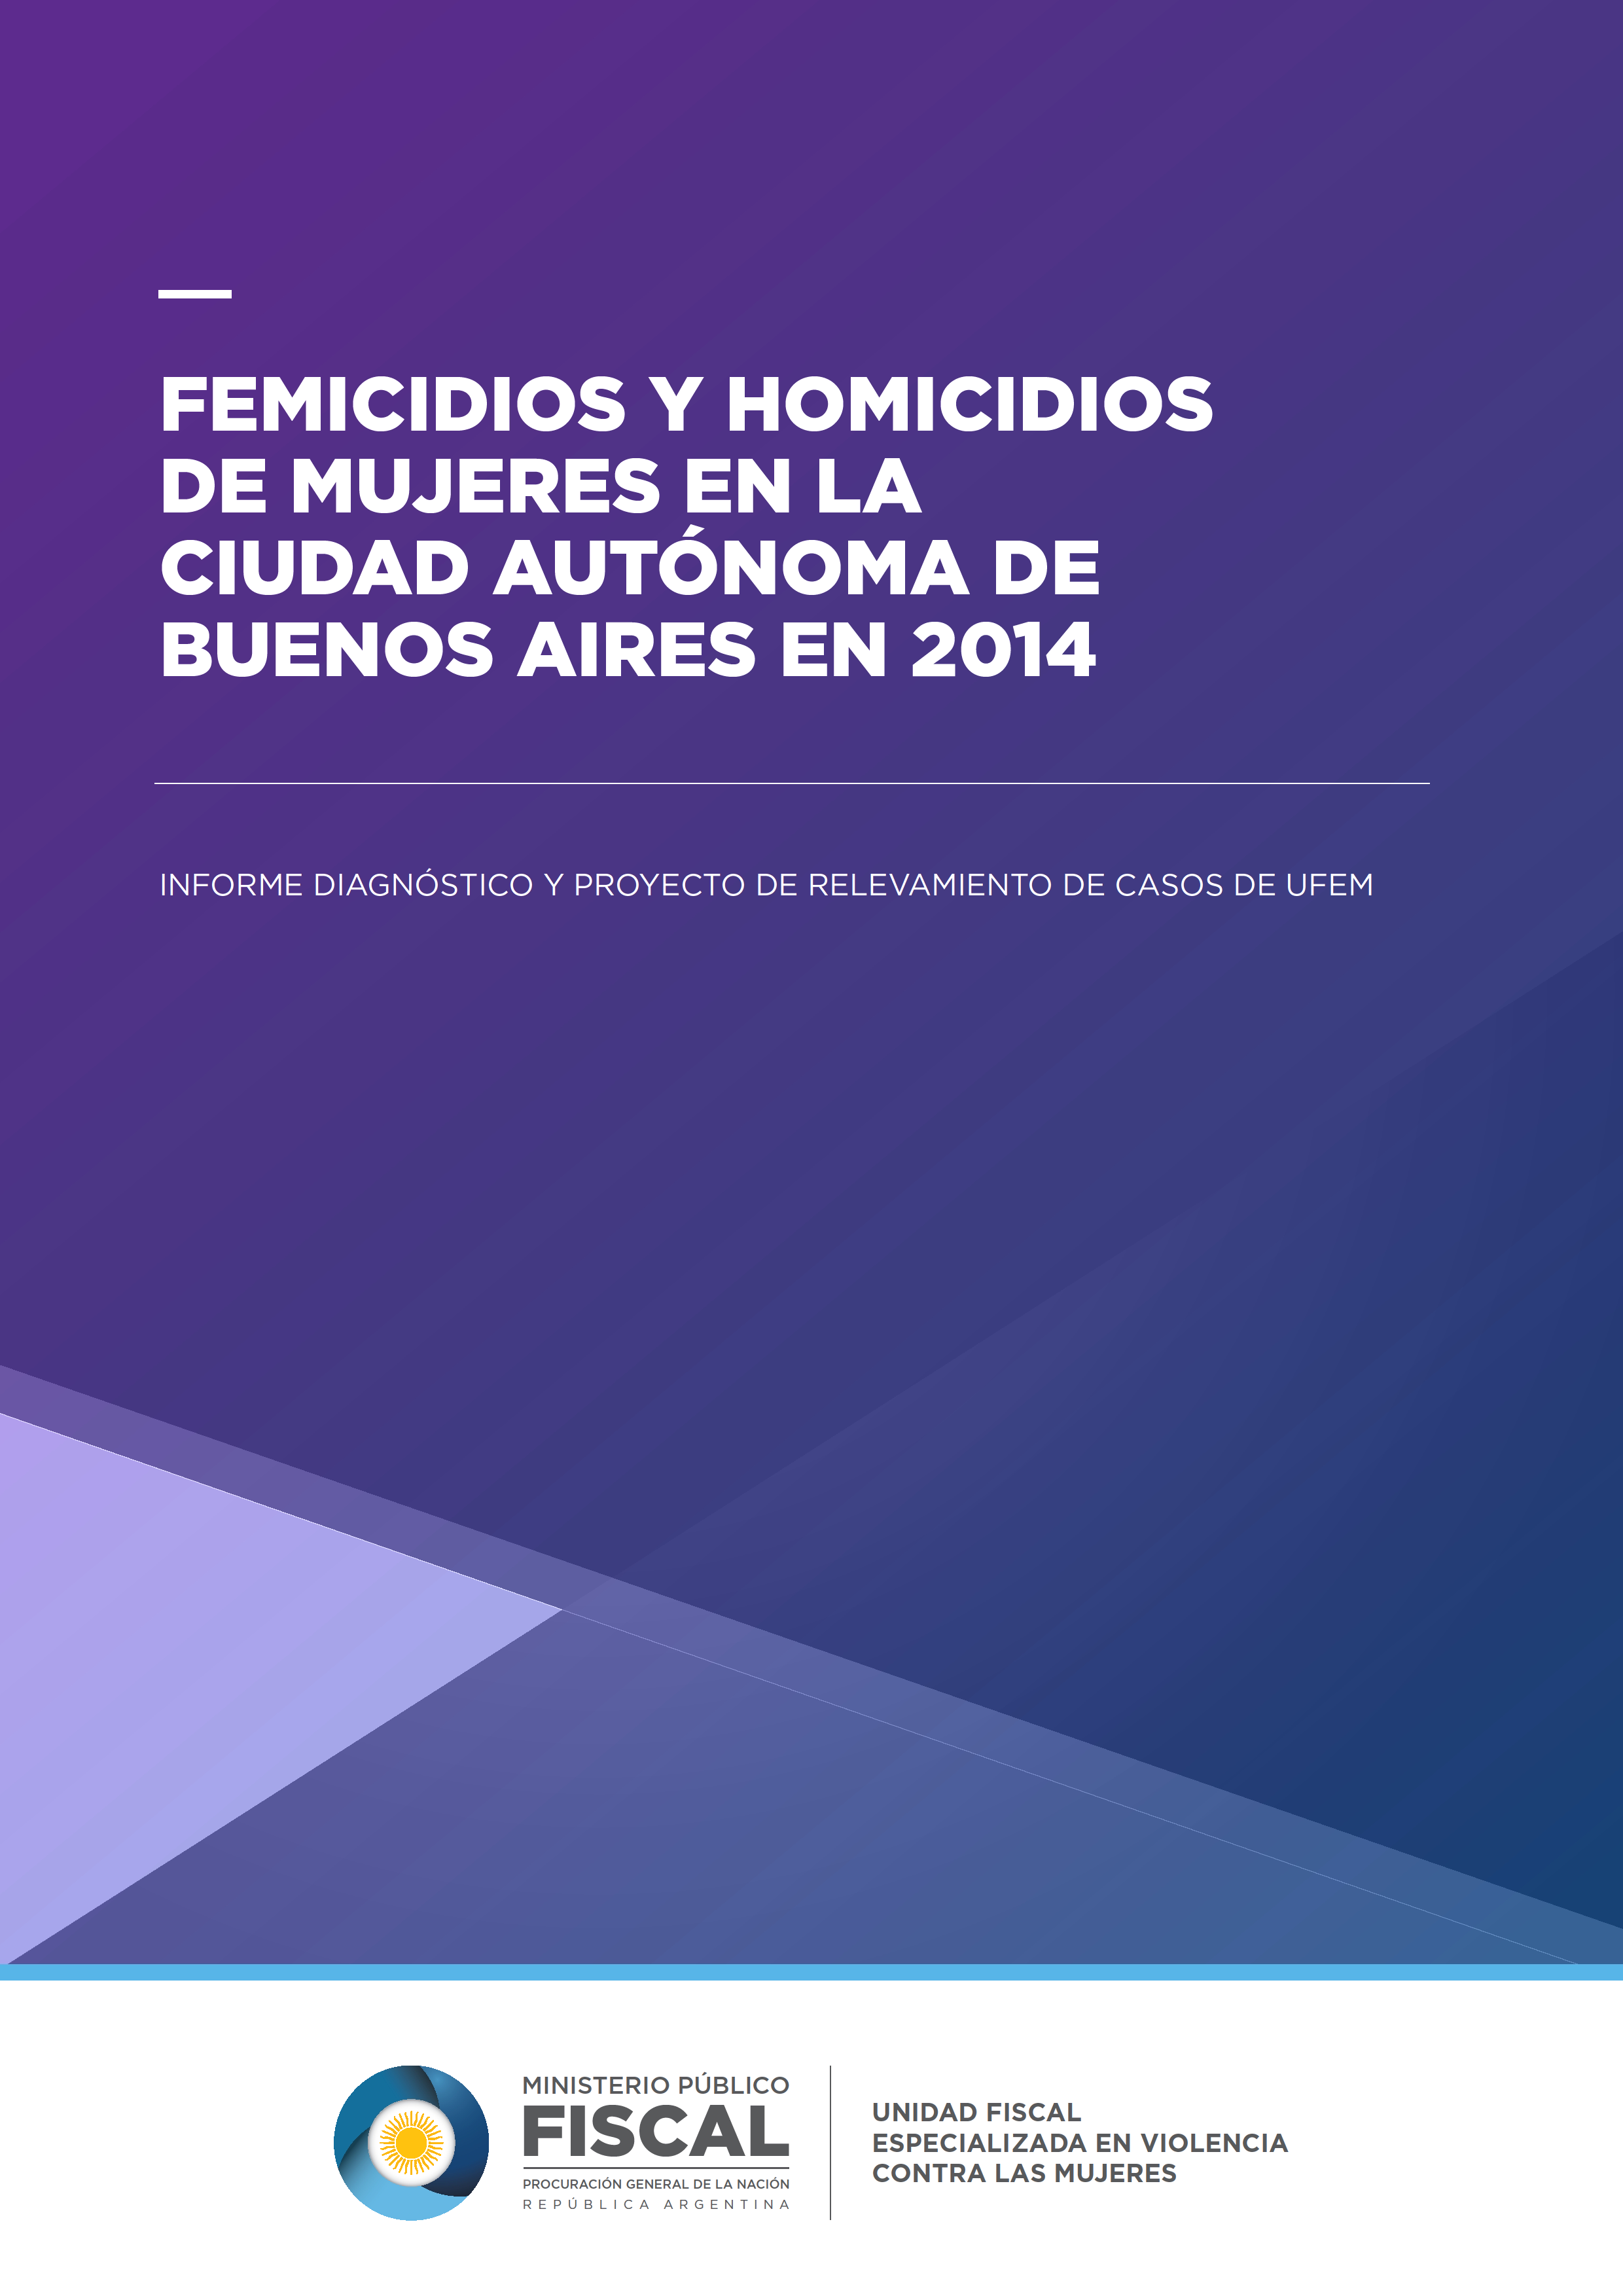 Femicidios y Homicidios de Mujeres en la Ciudad Autónoma de Buenos Aires 2014